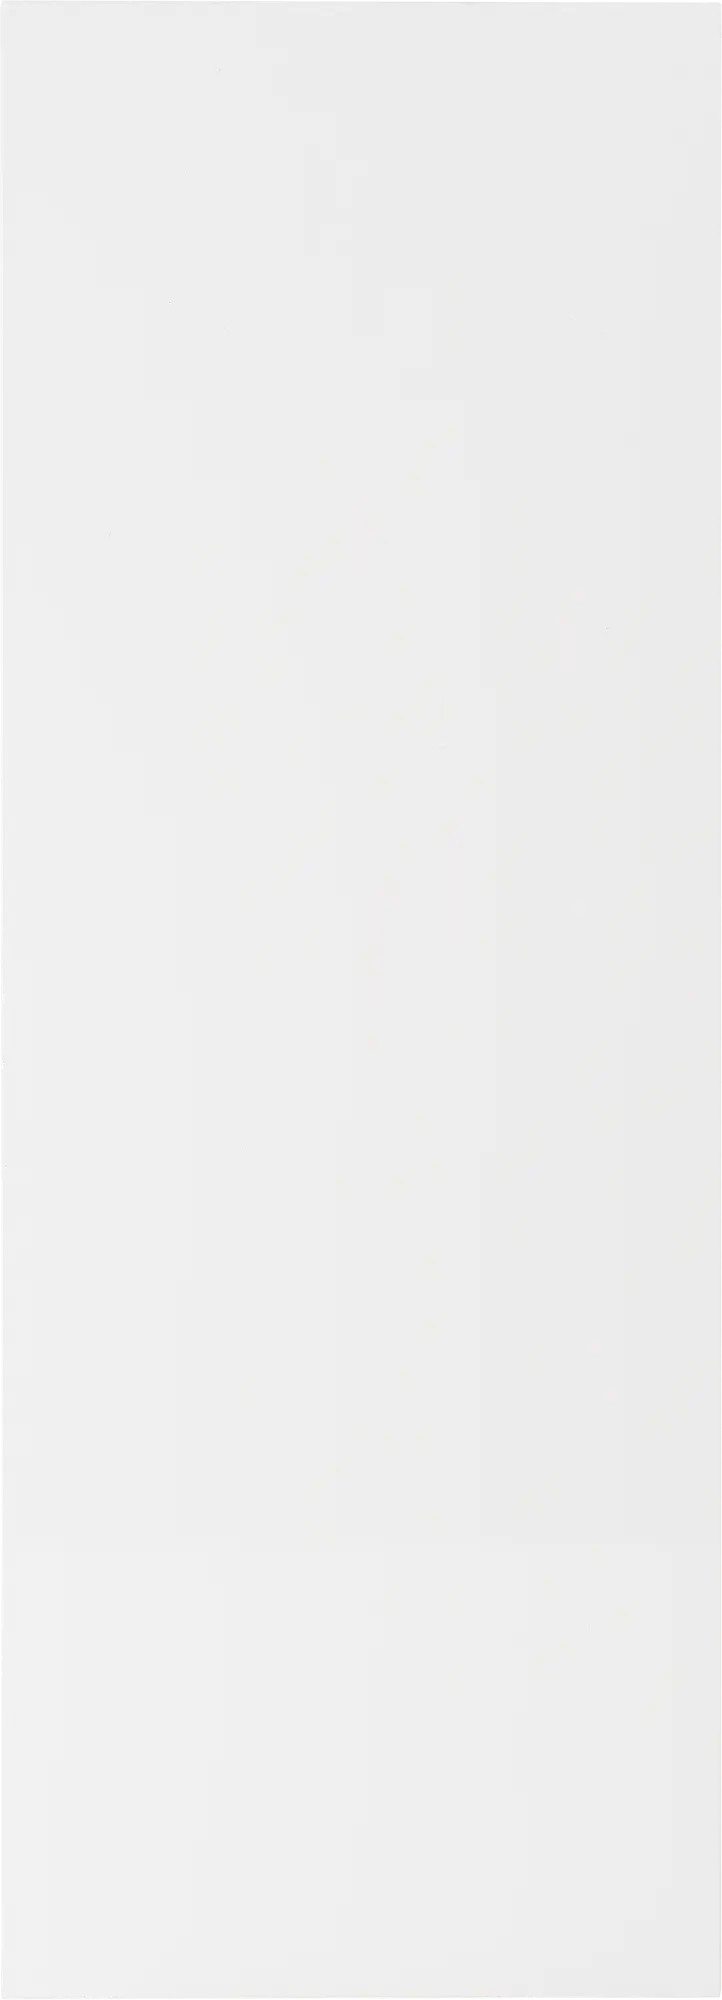 Costado para mueble de cocina atenas/mikonos blanco brillo h 102.4 x l 37 cm